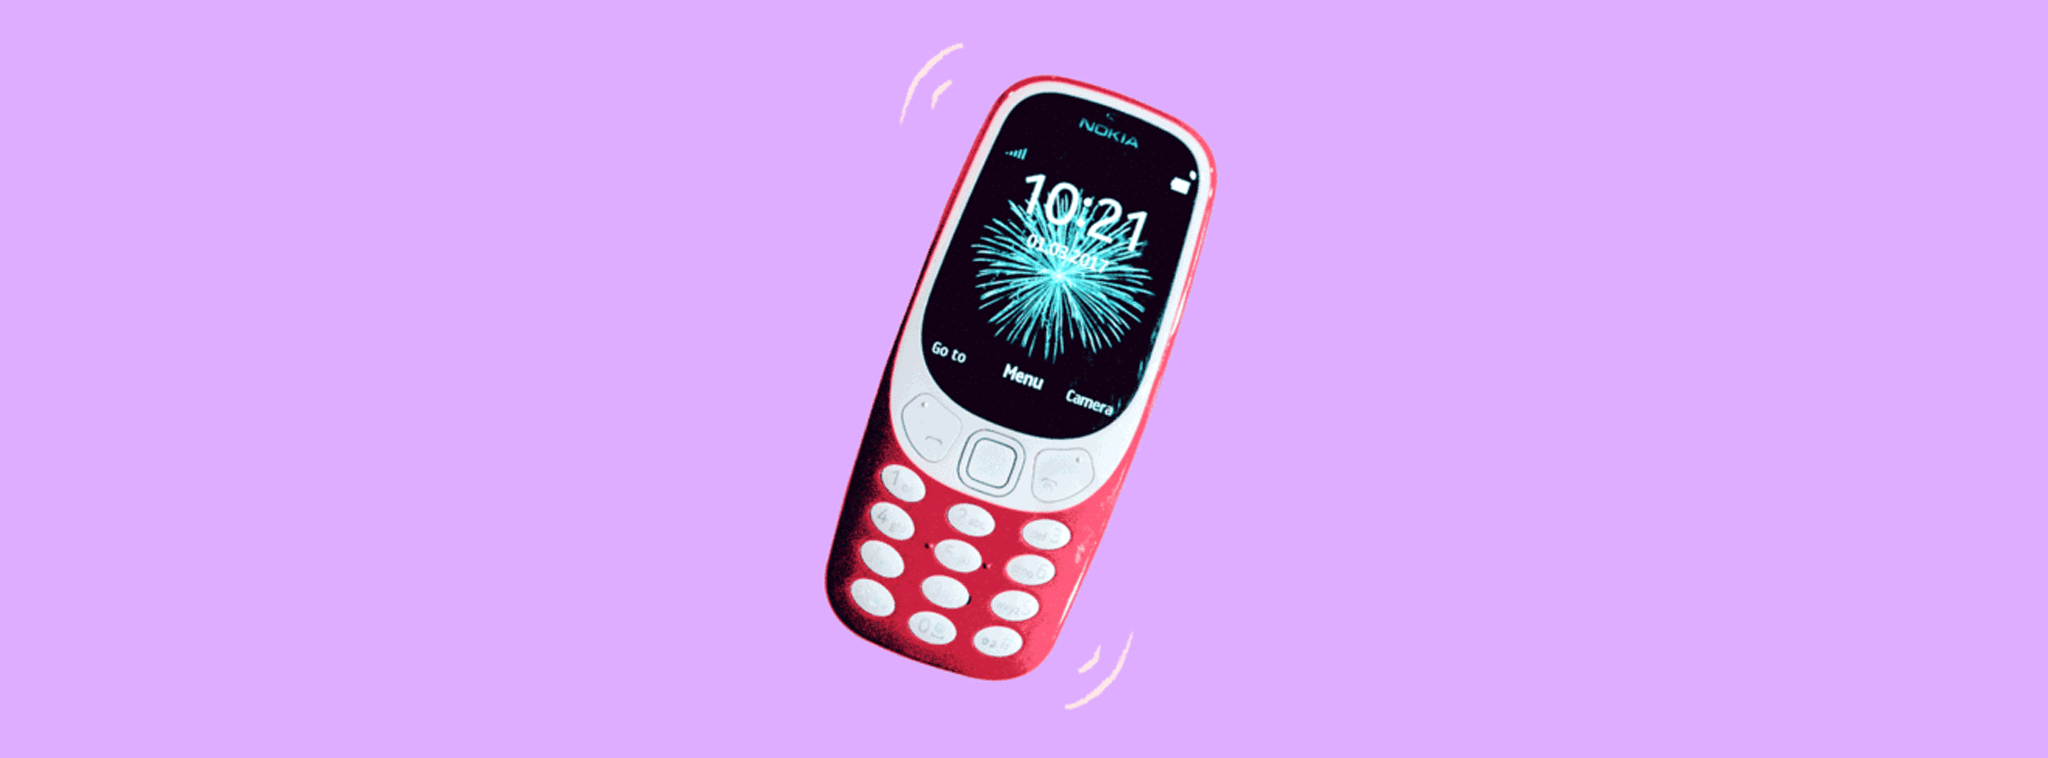 [Vui] Khả năng rung mạnh của Nokia 3310 bị phụ nữ lợi dụng để "vui vẻ" ở Ấn Độ